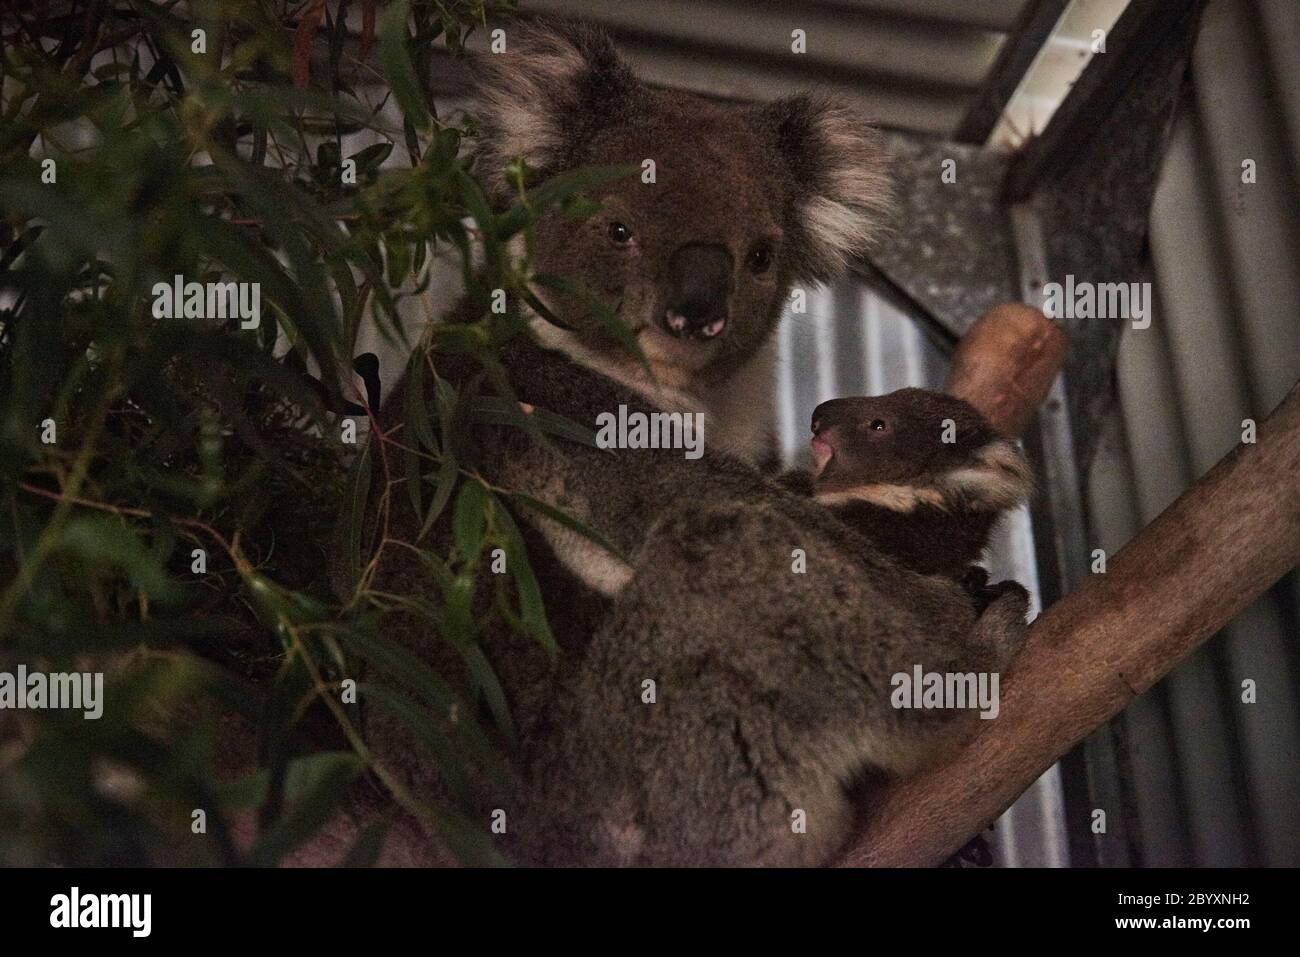 Susan Pulis, un caregiviere della fauna selvatica e il fondatore del Raymond Island Koala e Wildlife Shelter, sull'isola di Raymond, Victoria, Australia lunedì 6 gennaio 2020 Foto Stock